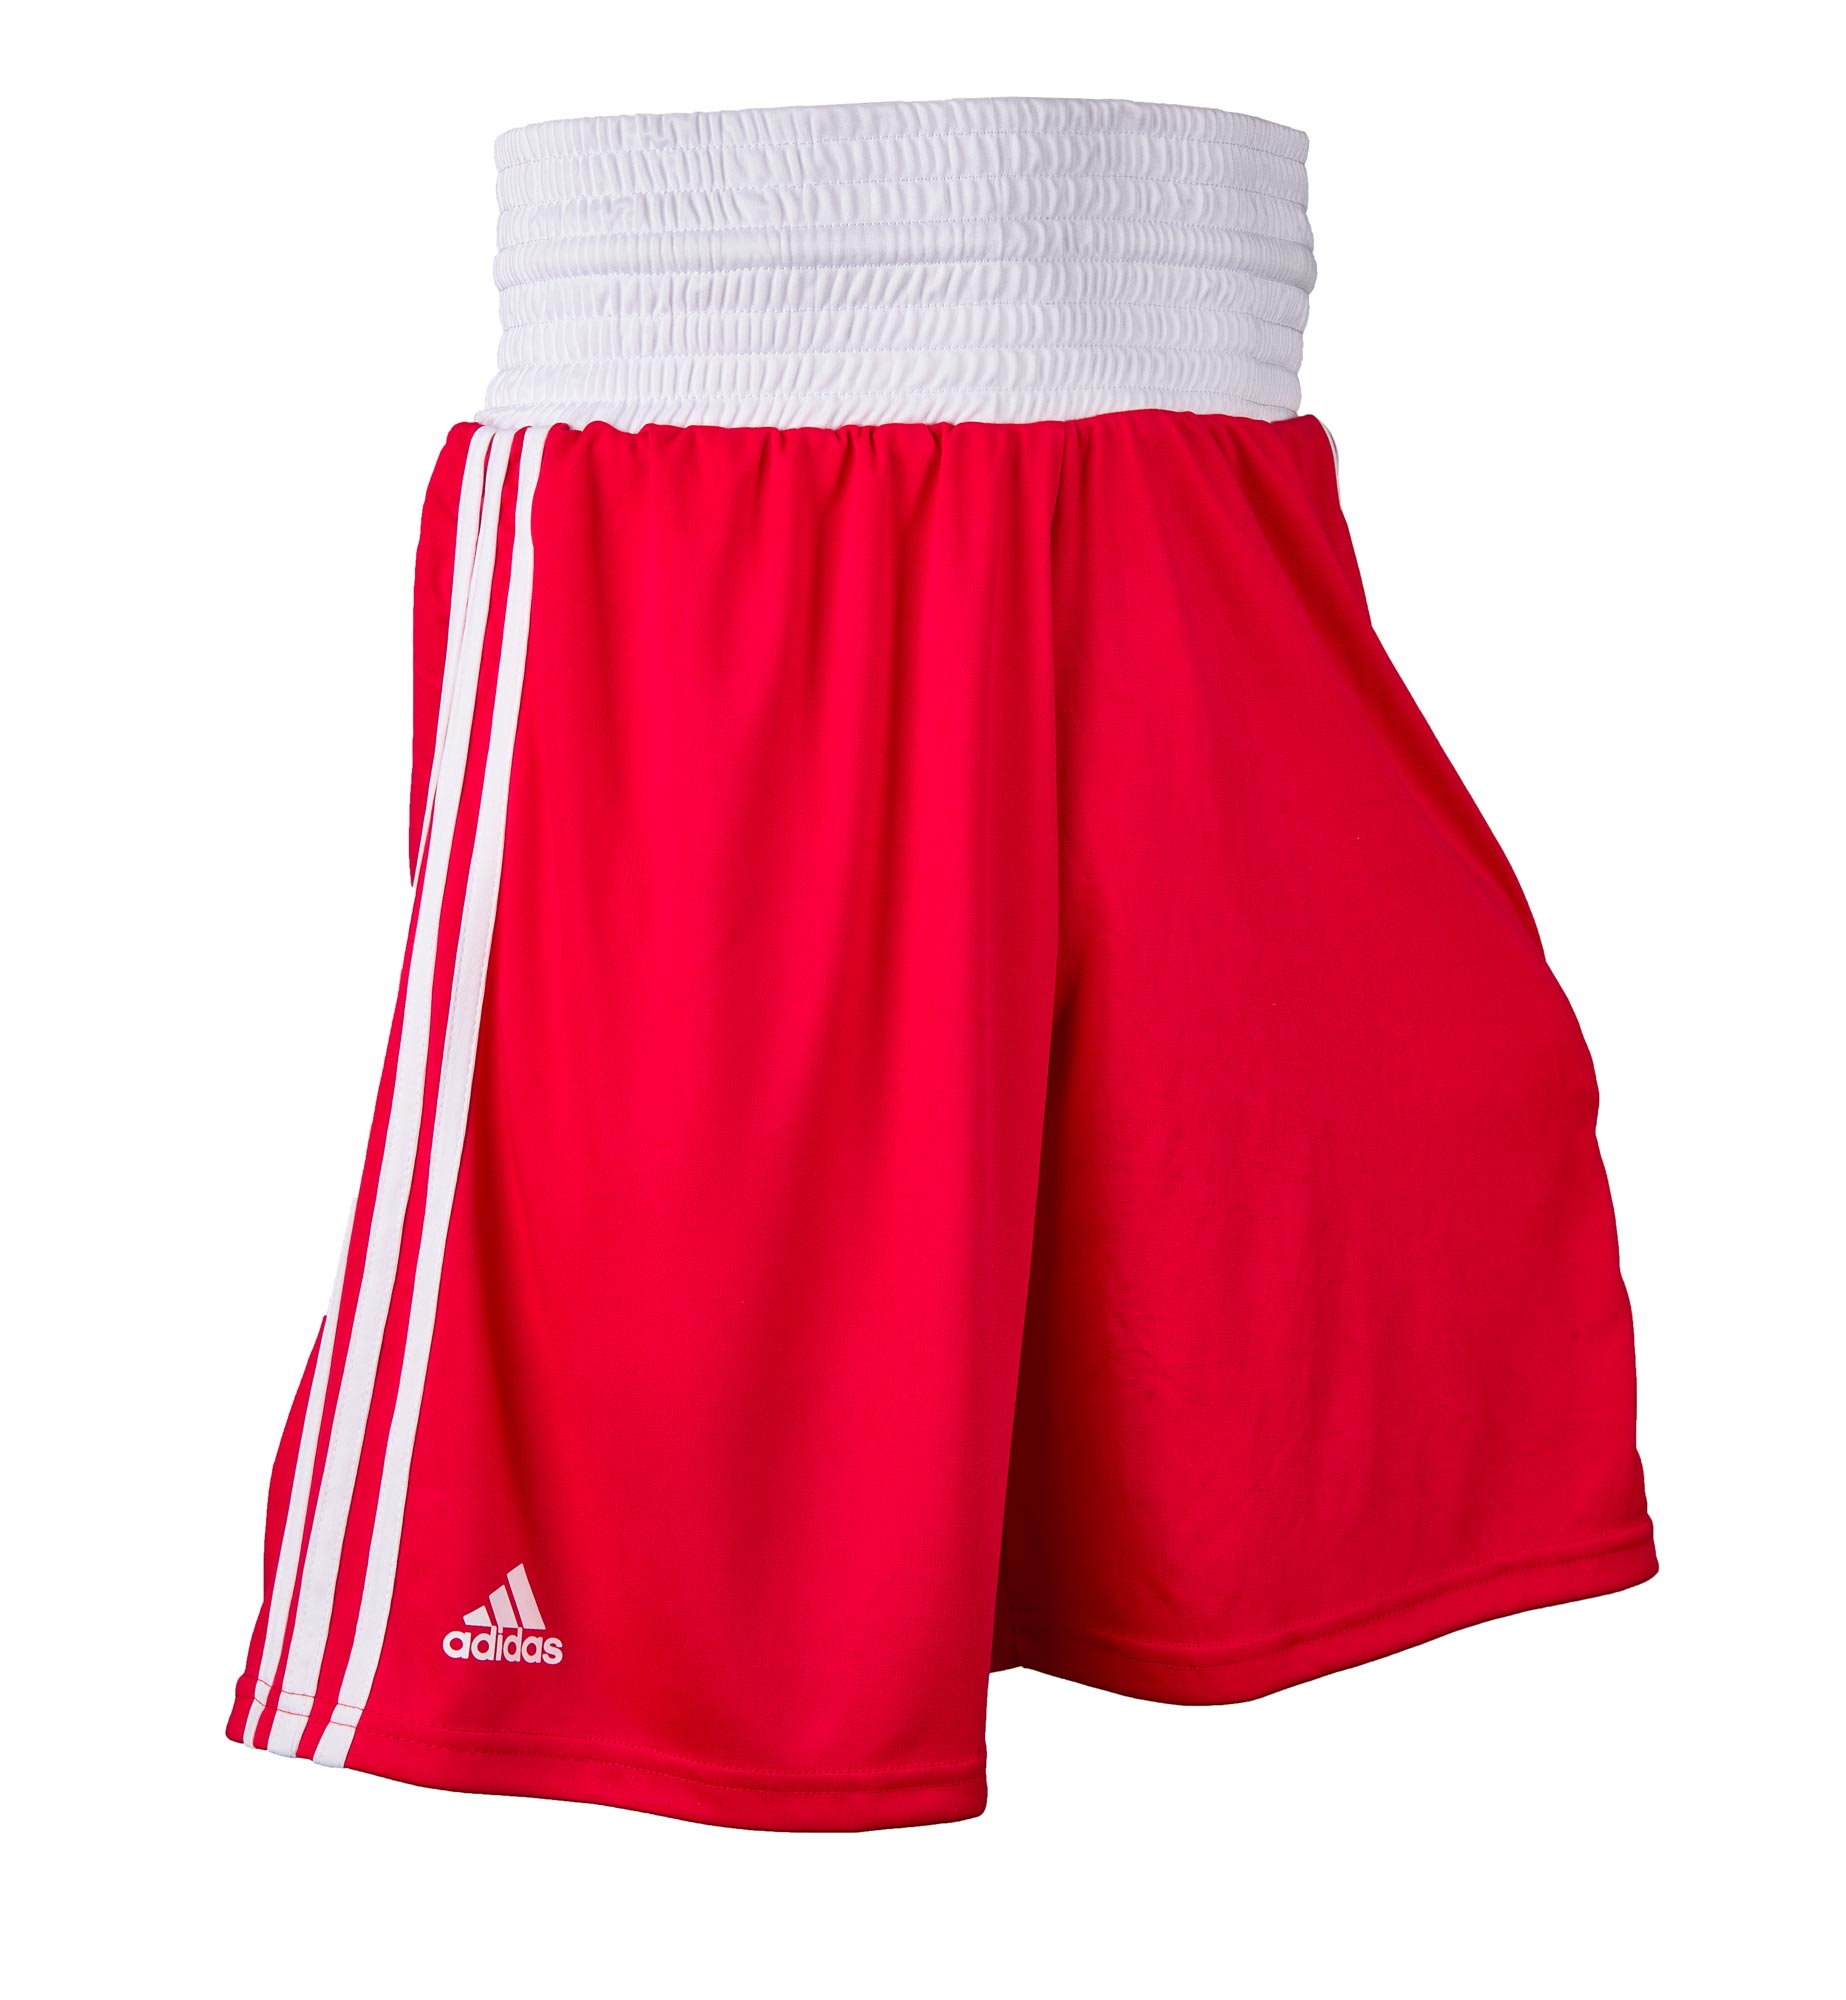 adidas boxing shorts ADIBTS02 red